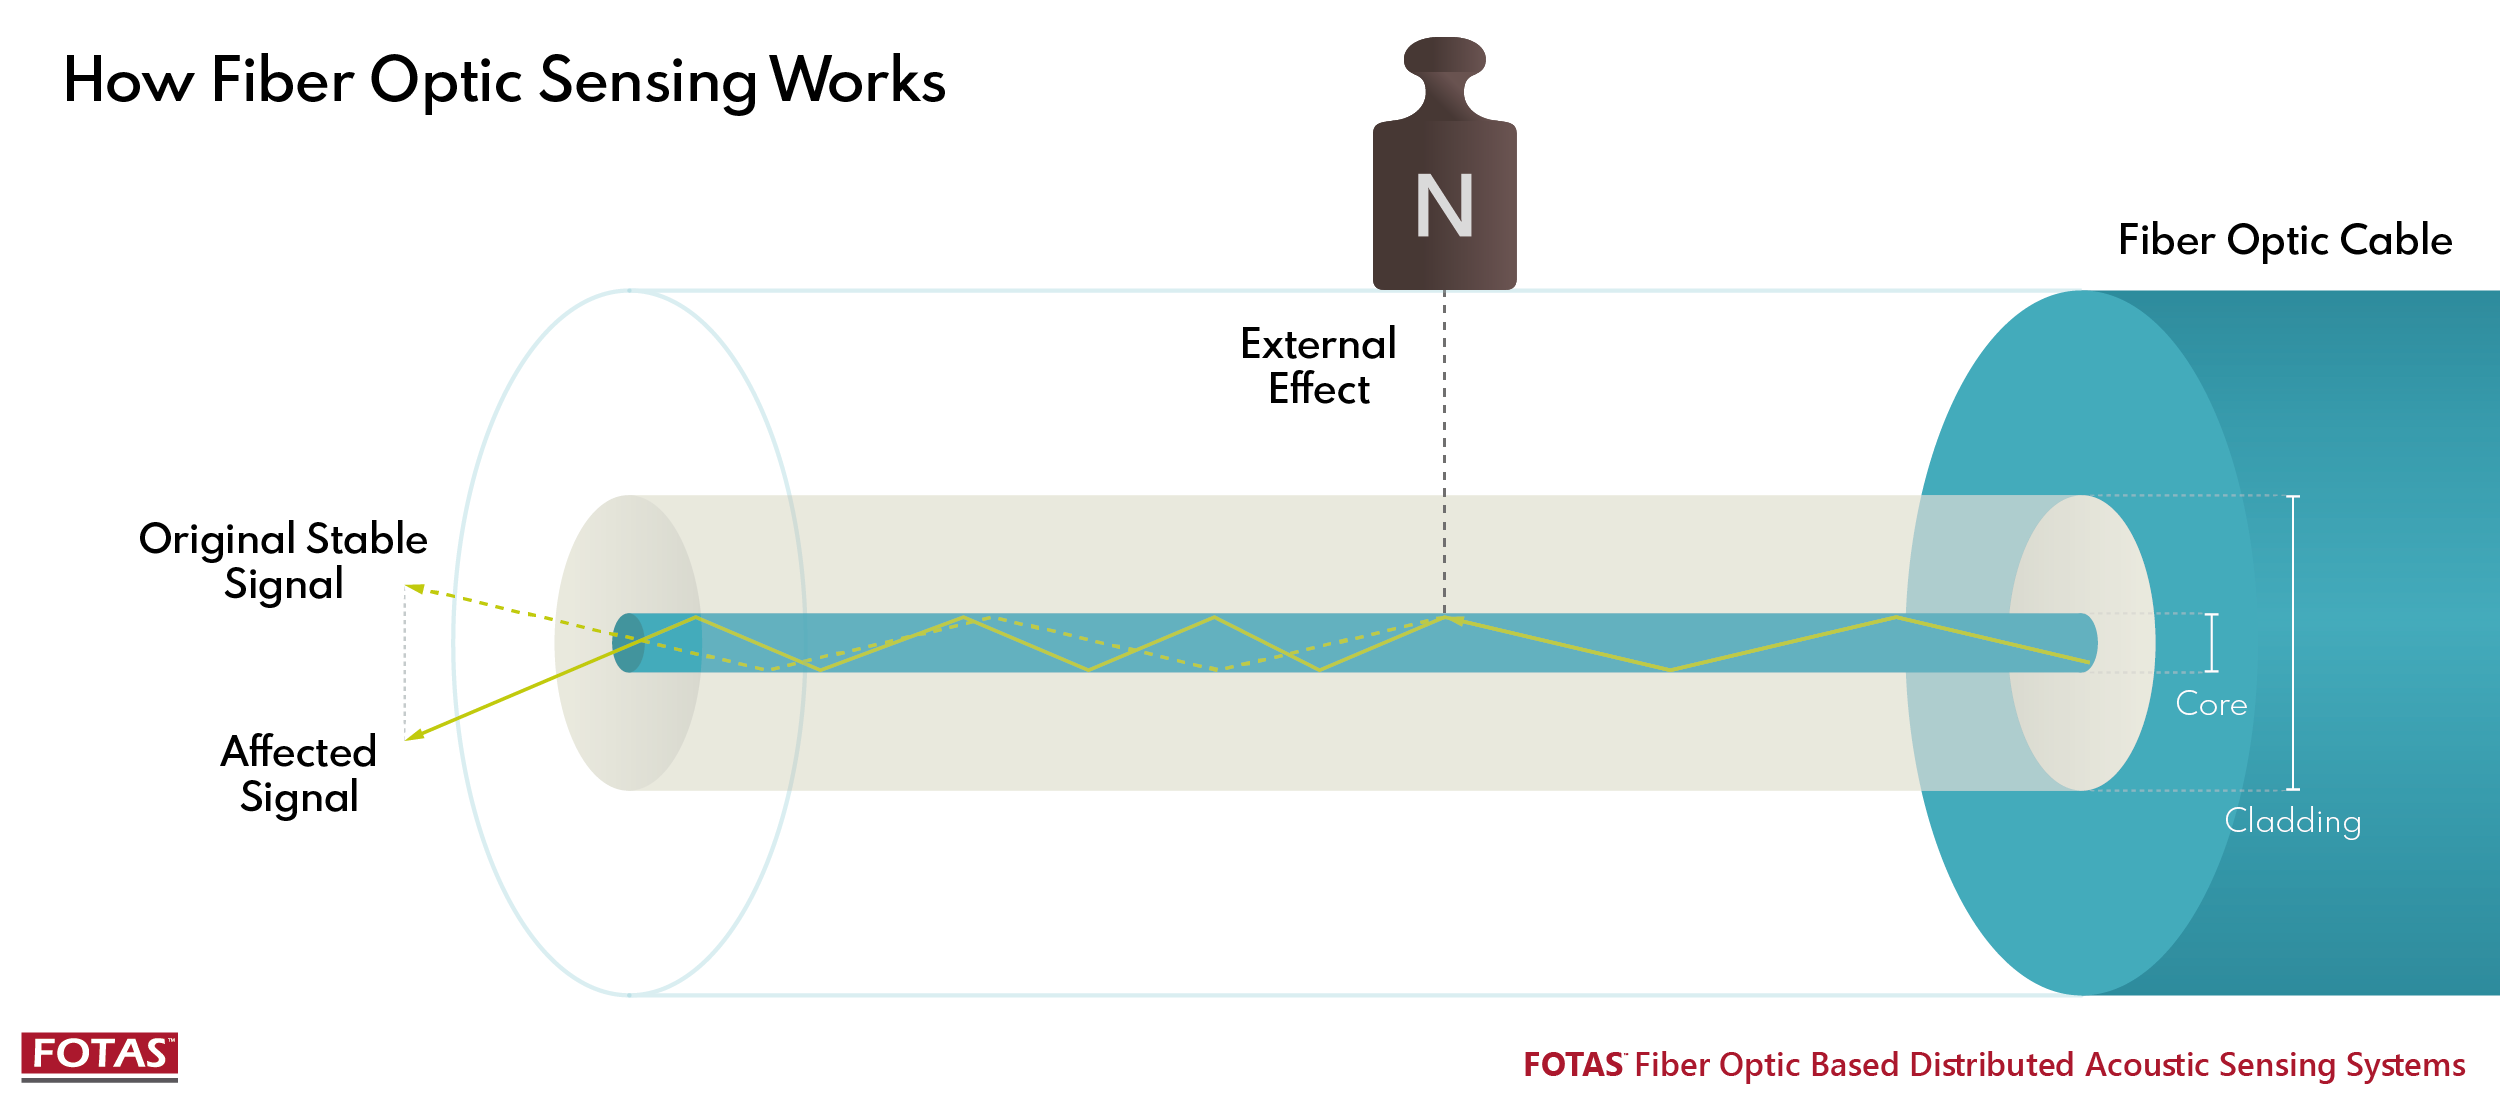 How Fiber Optic Sensing Works